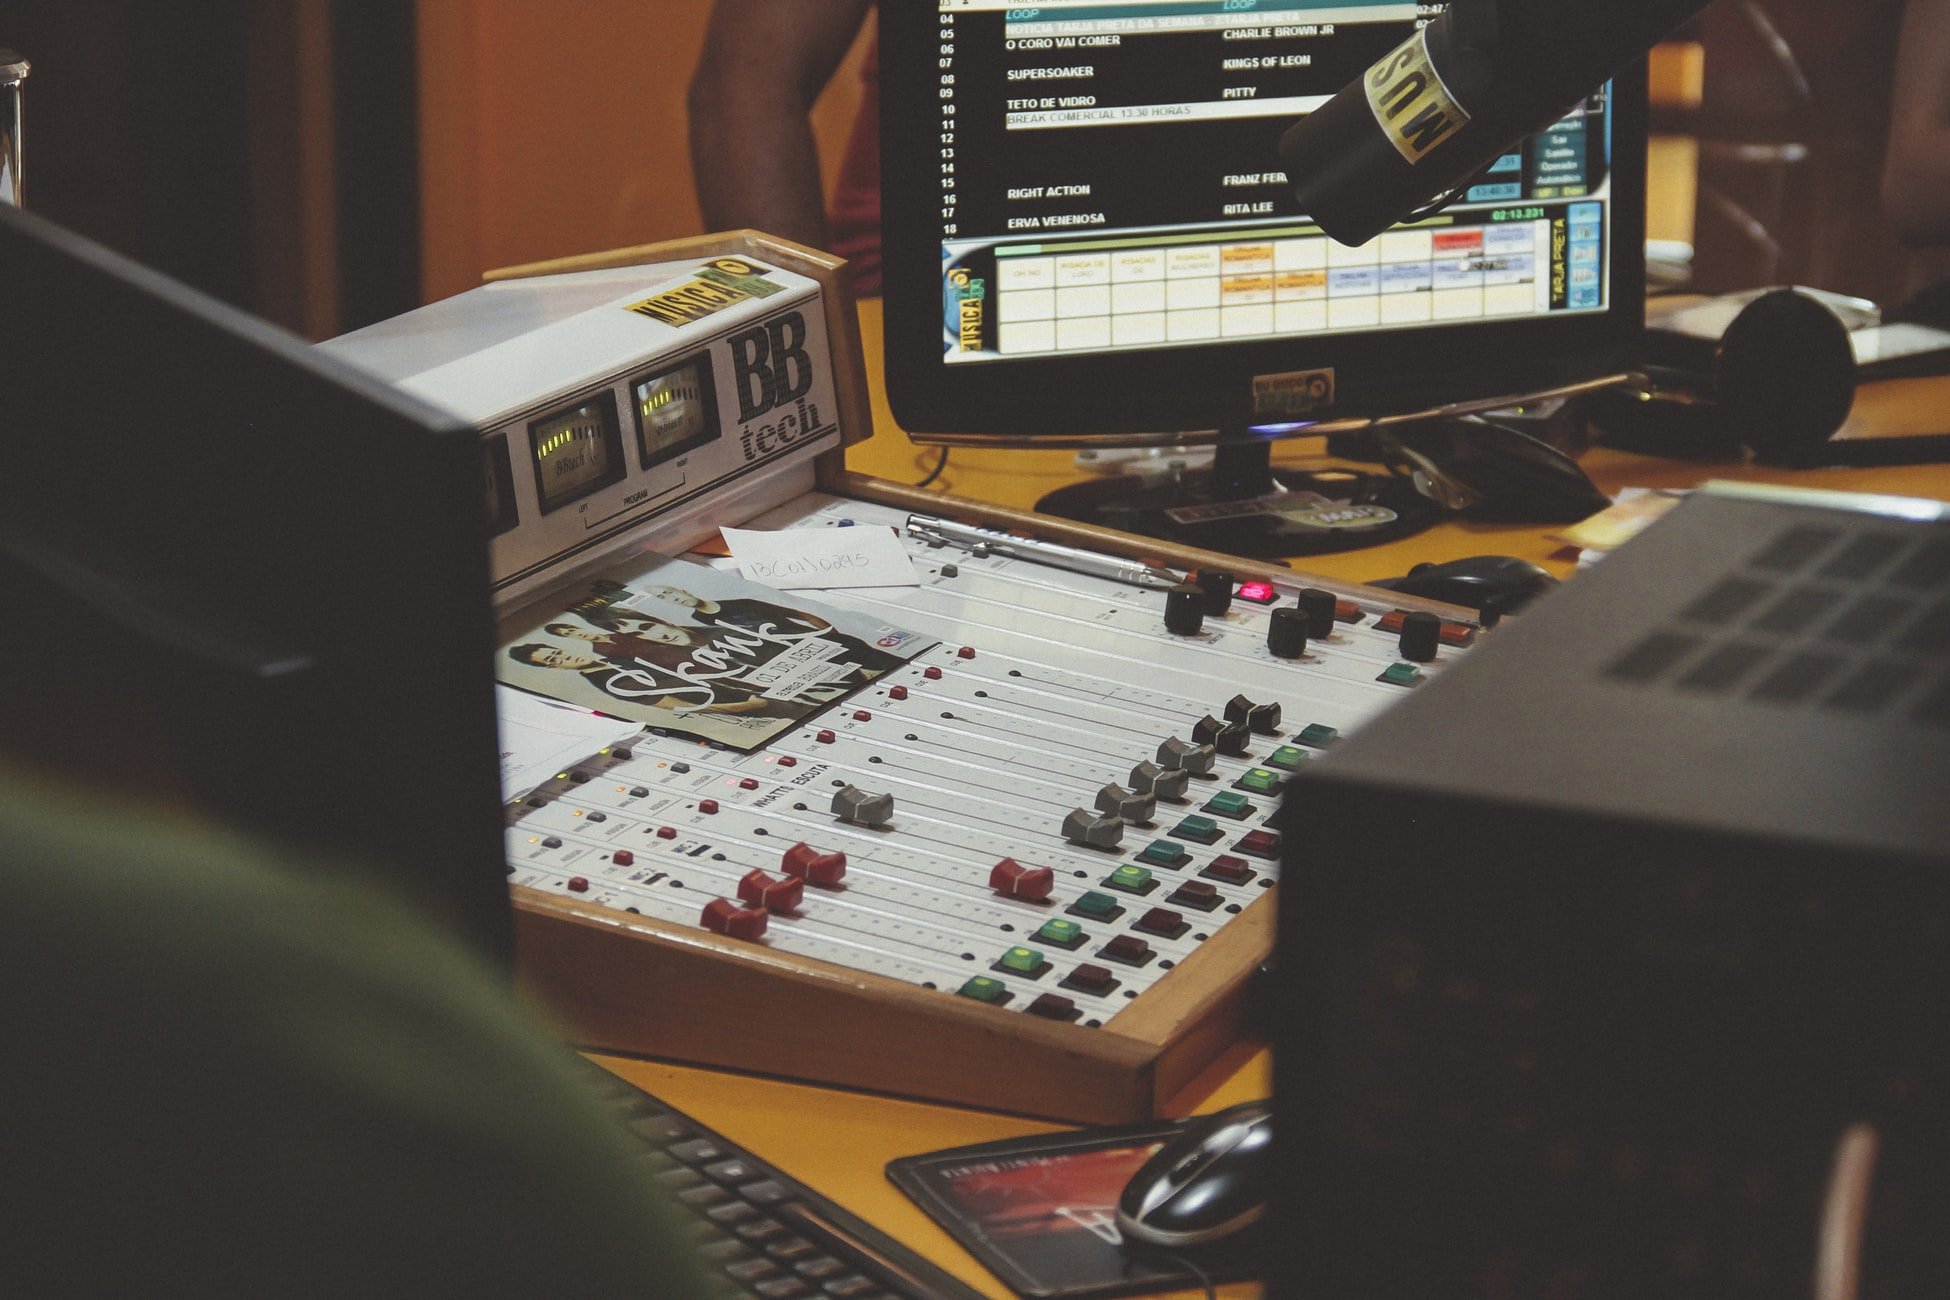 Mesa de som, monitor e microfone em estúdio de rádio.